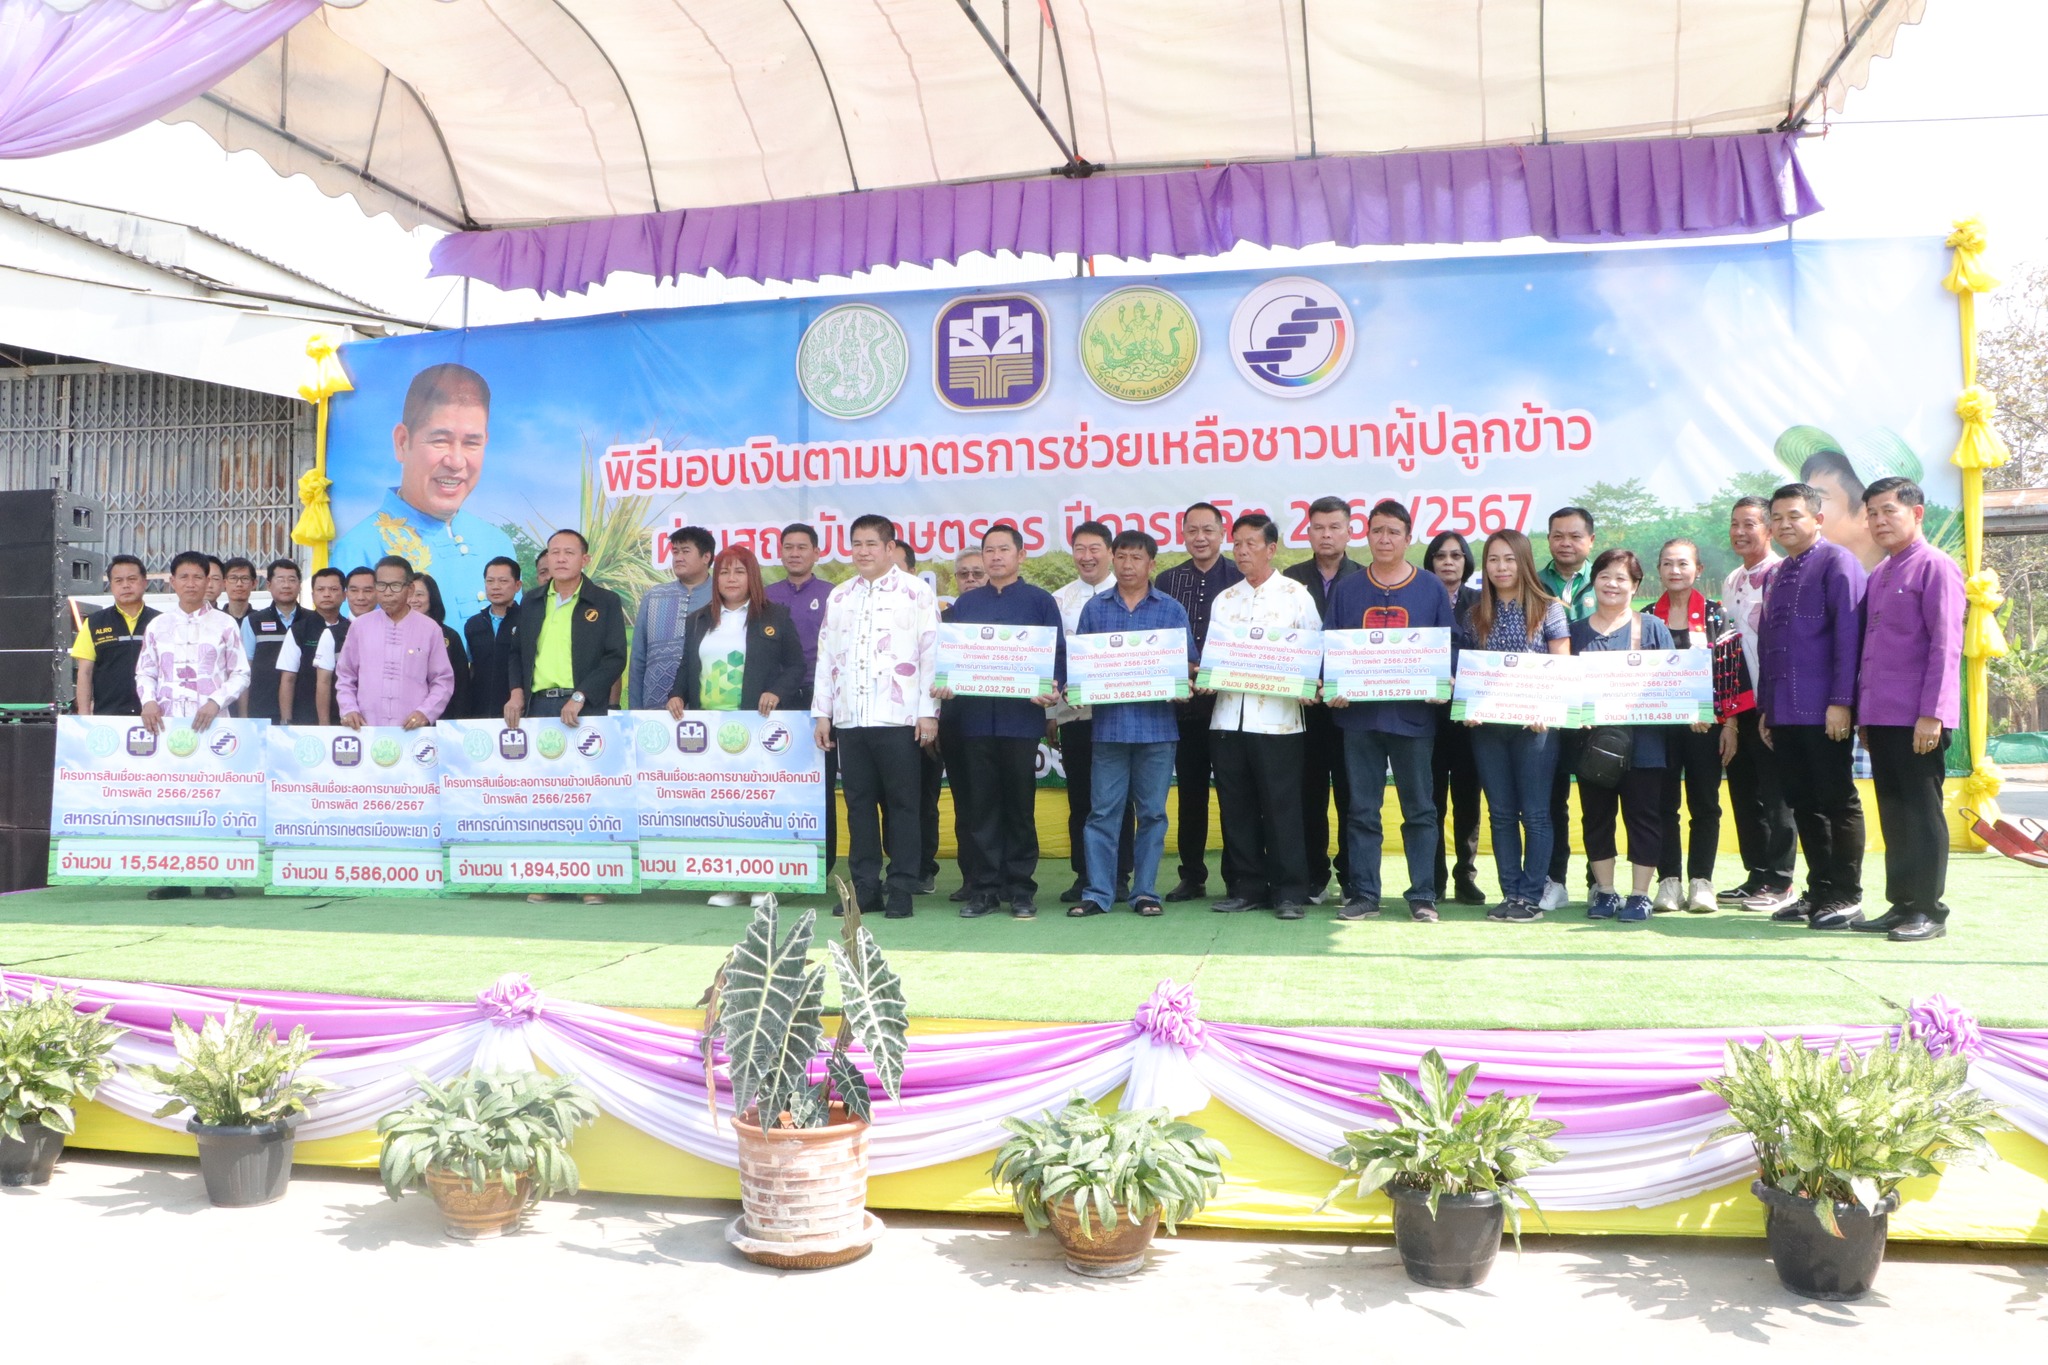 รัฐมนตรีว่าการกระทรวงเกษตรและสหกรณ์ ลงพื้นที่พะเยา มอบเงิน 25.6 ล้านบาท ตามมาตรการช่วยเหลือชาวนาผู้ปลูกข้าว 2566/67  พร้อมยกกลไกสหกรณ์ช่วยสร้างความเข้มแข็งให้เกษตรกรไทย